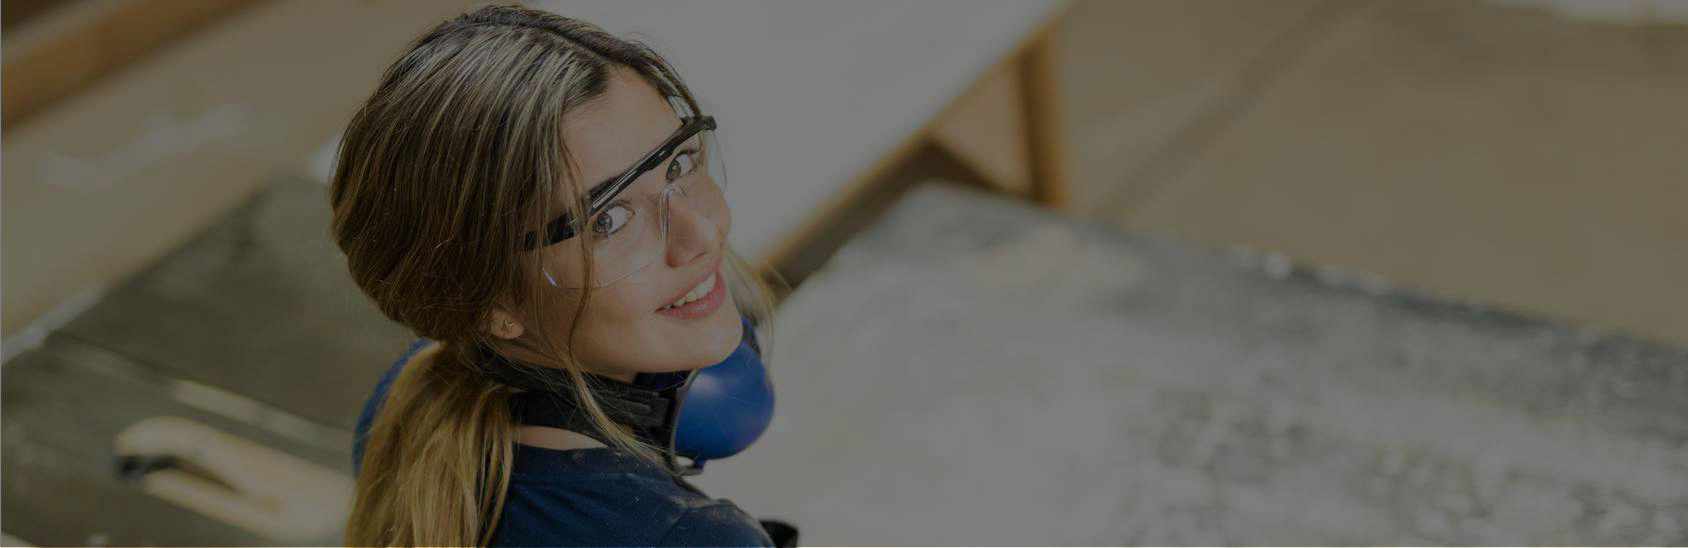 Hintergrundbild Praxiscoaching - Mädchen mit Schutzbrille